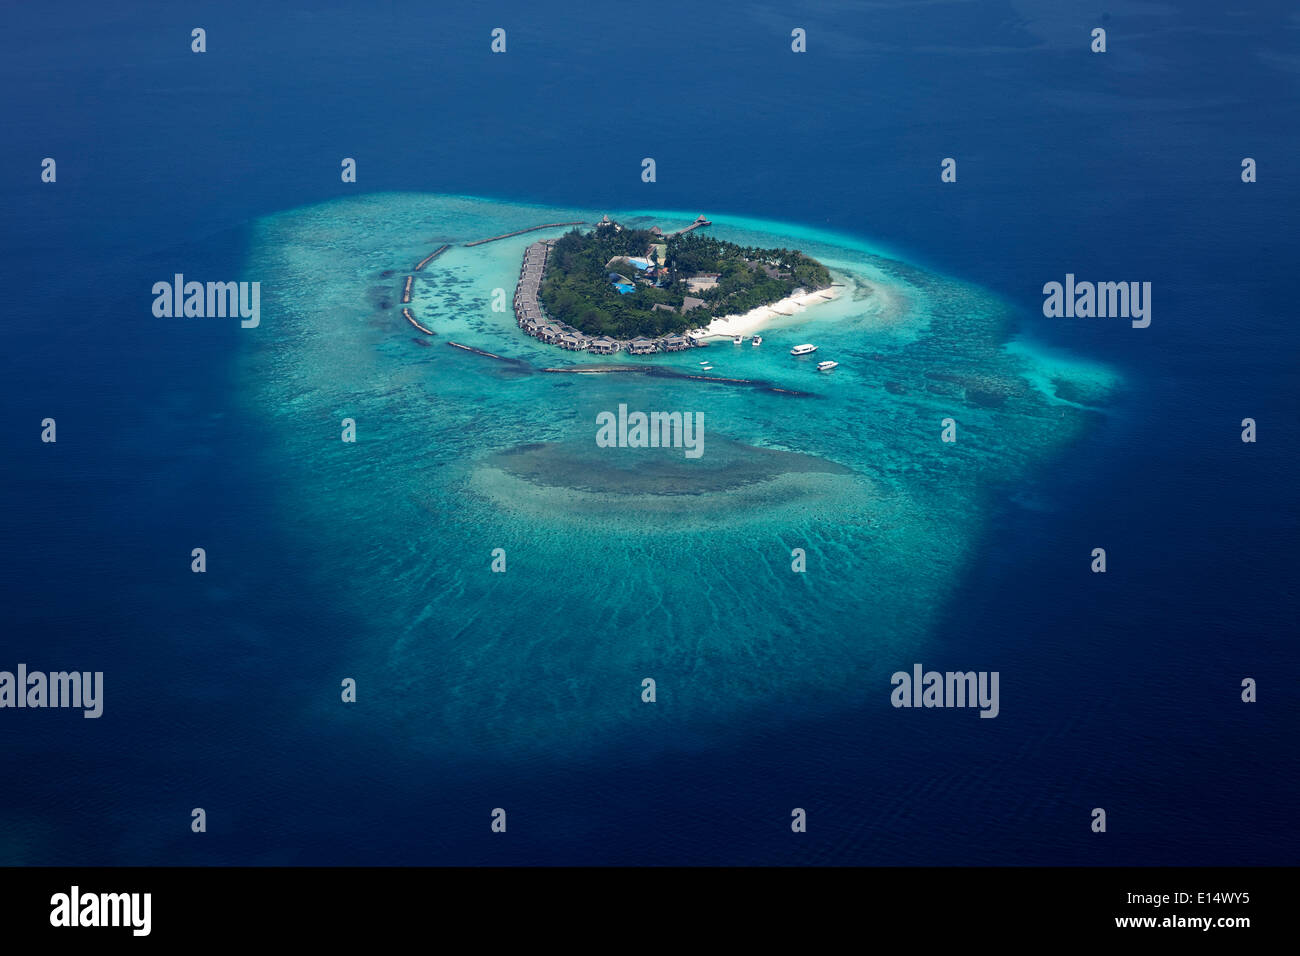 Vue aérienne, île de l'Océan Indien, les Maldives Banque D'Images